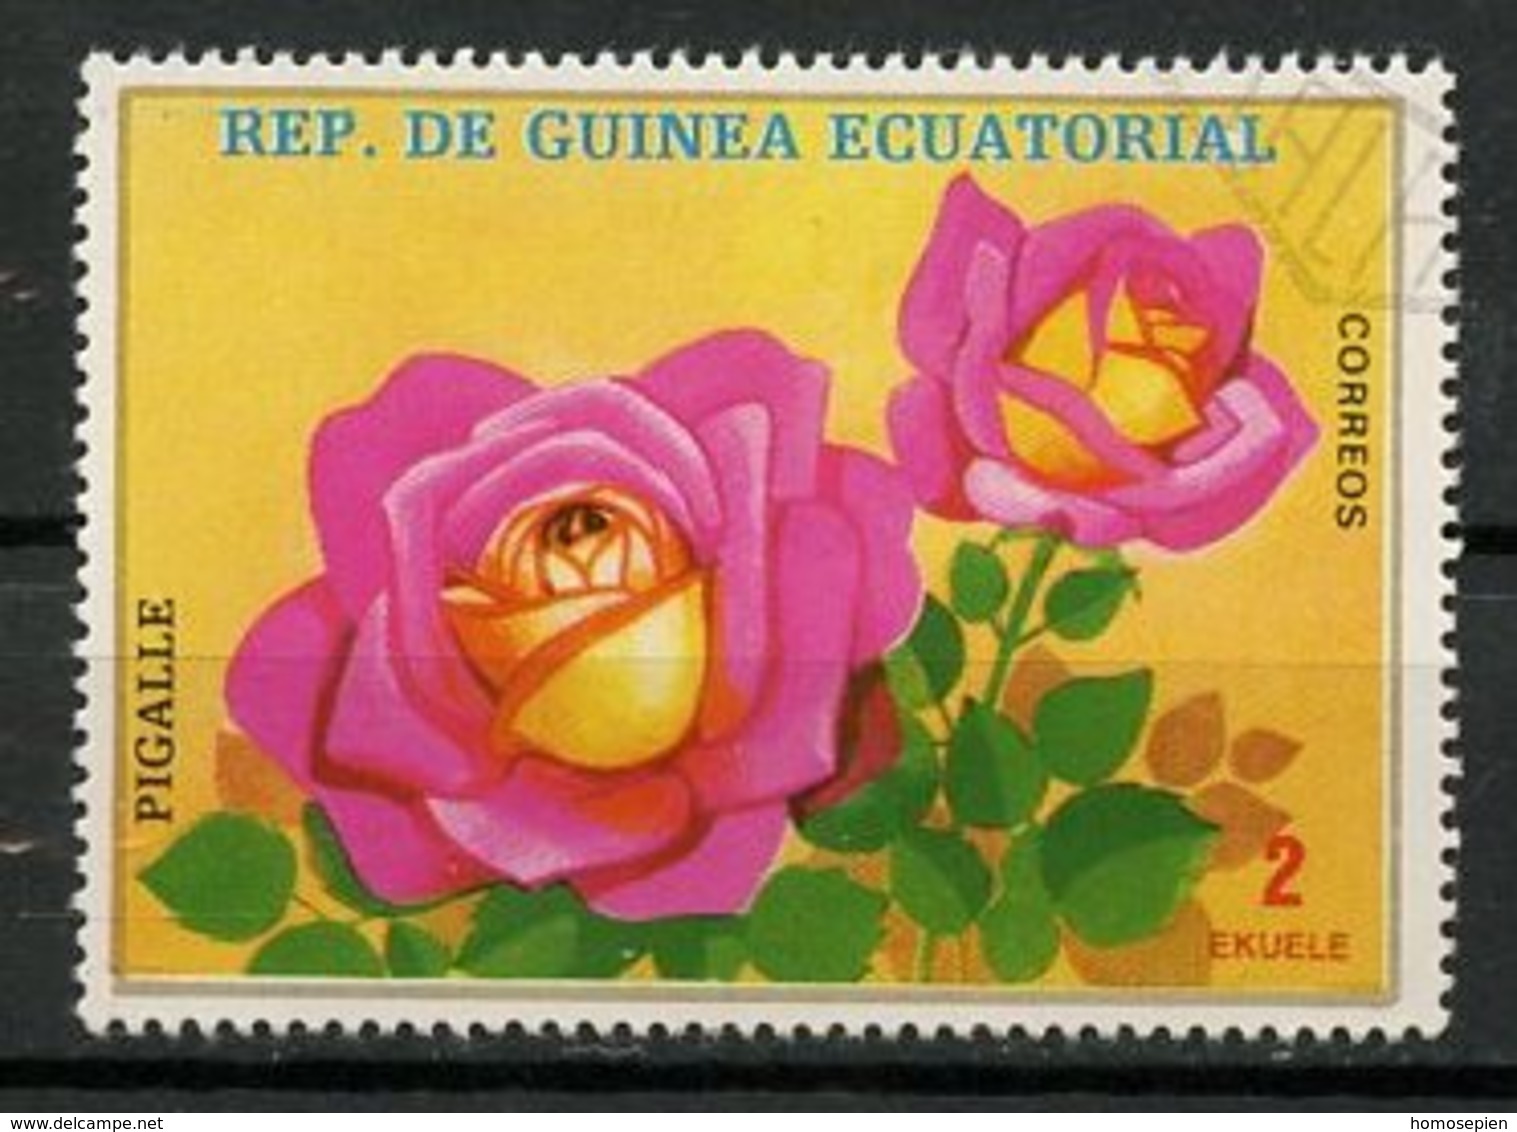 Guinée équatoriale - Guinea 1979 Y&T N°(1)-2e - Michel N°1574 (o) - 2e Rose Pigalle - Guinée Equatoriale